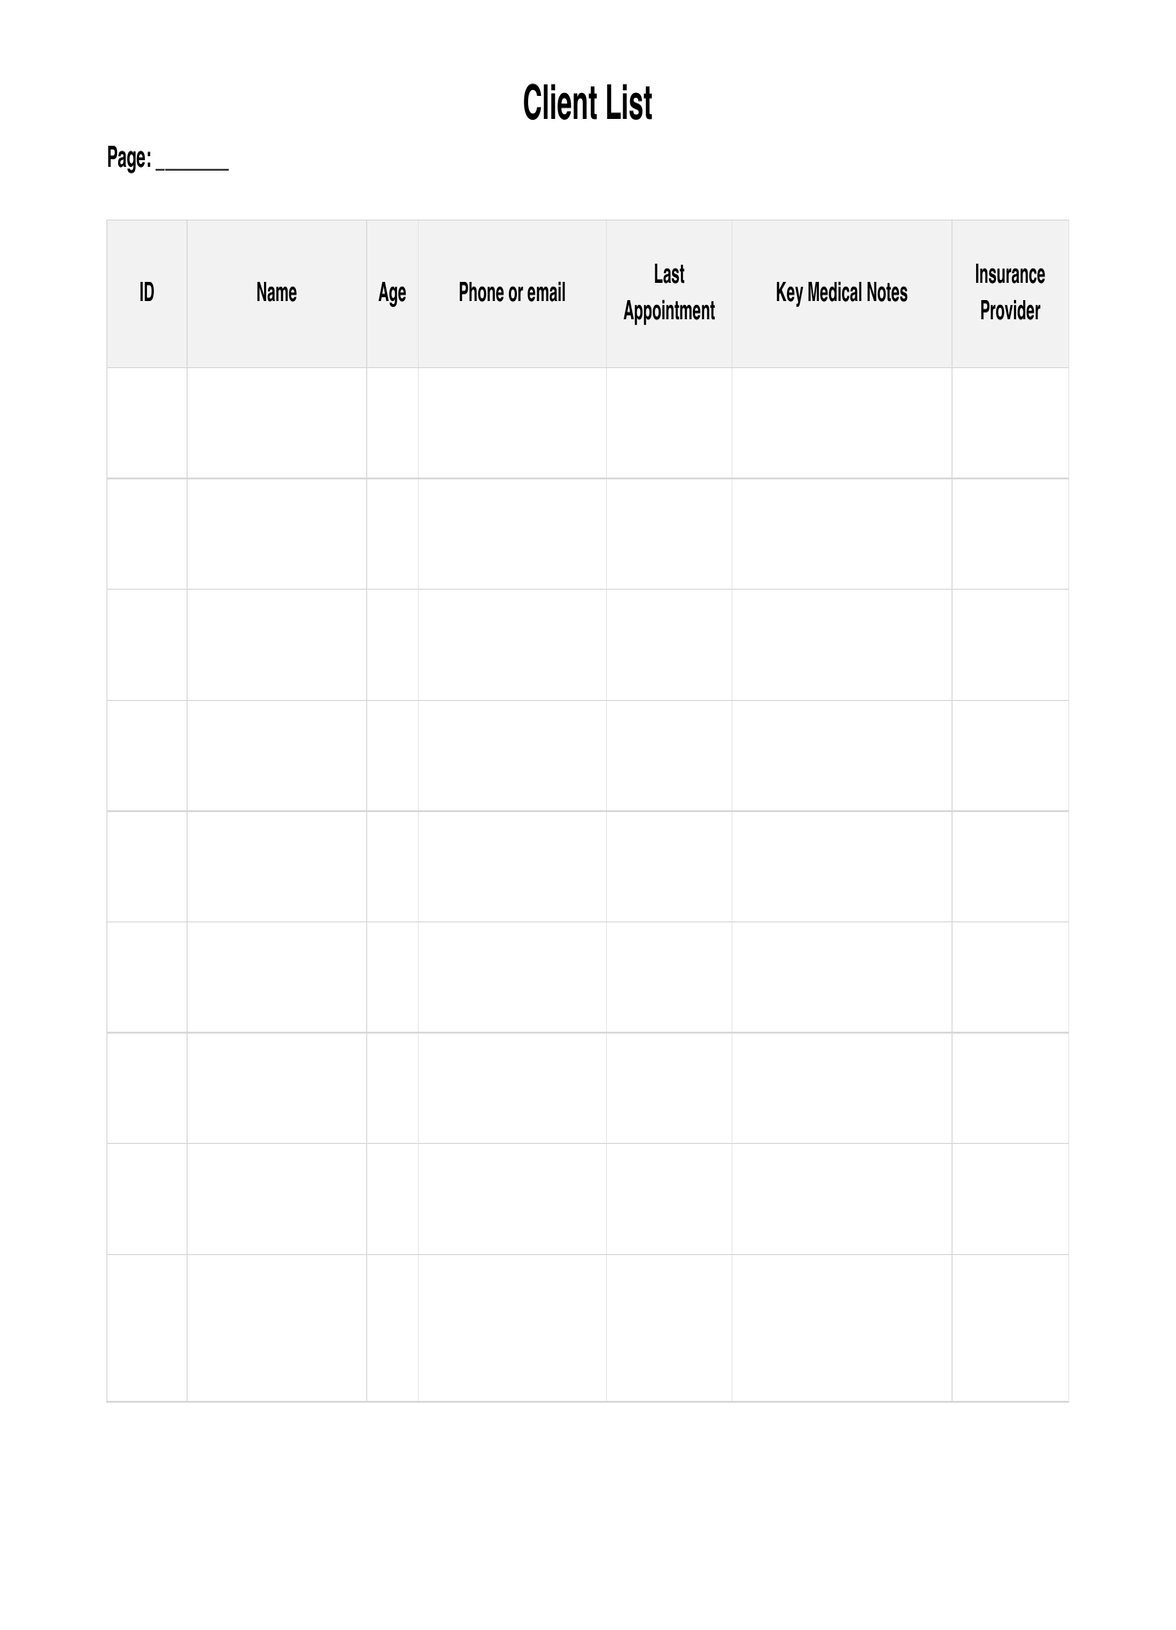 Client List PDF Example